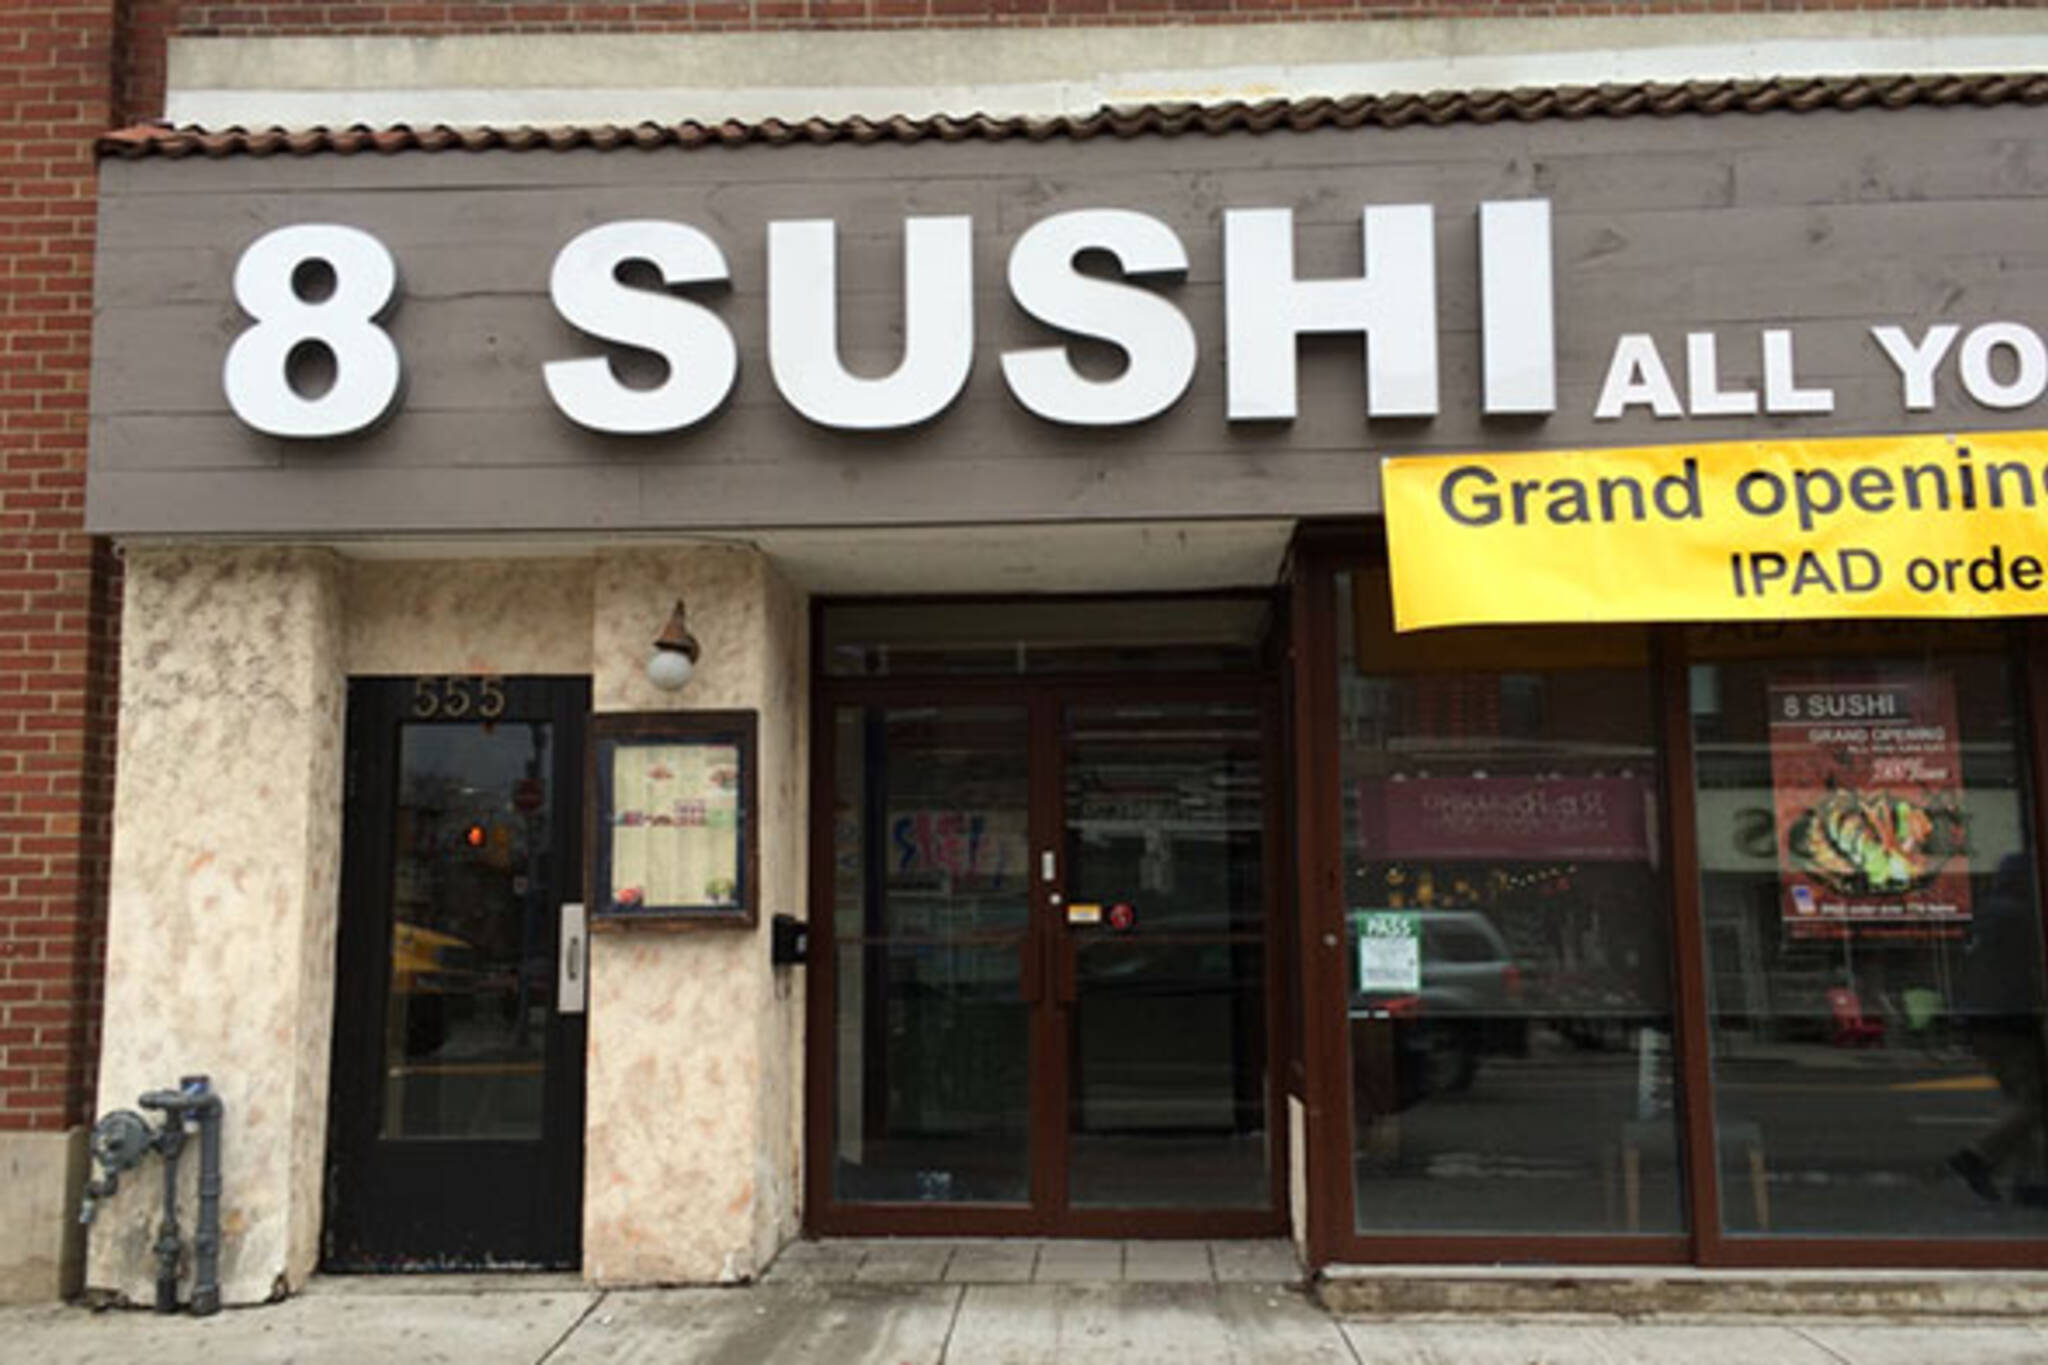 8 Sushi